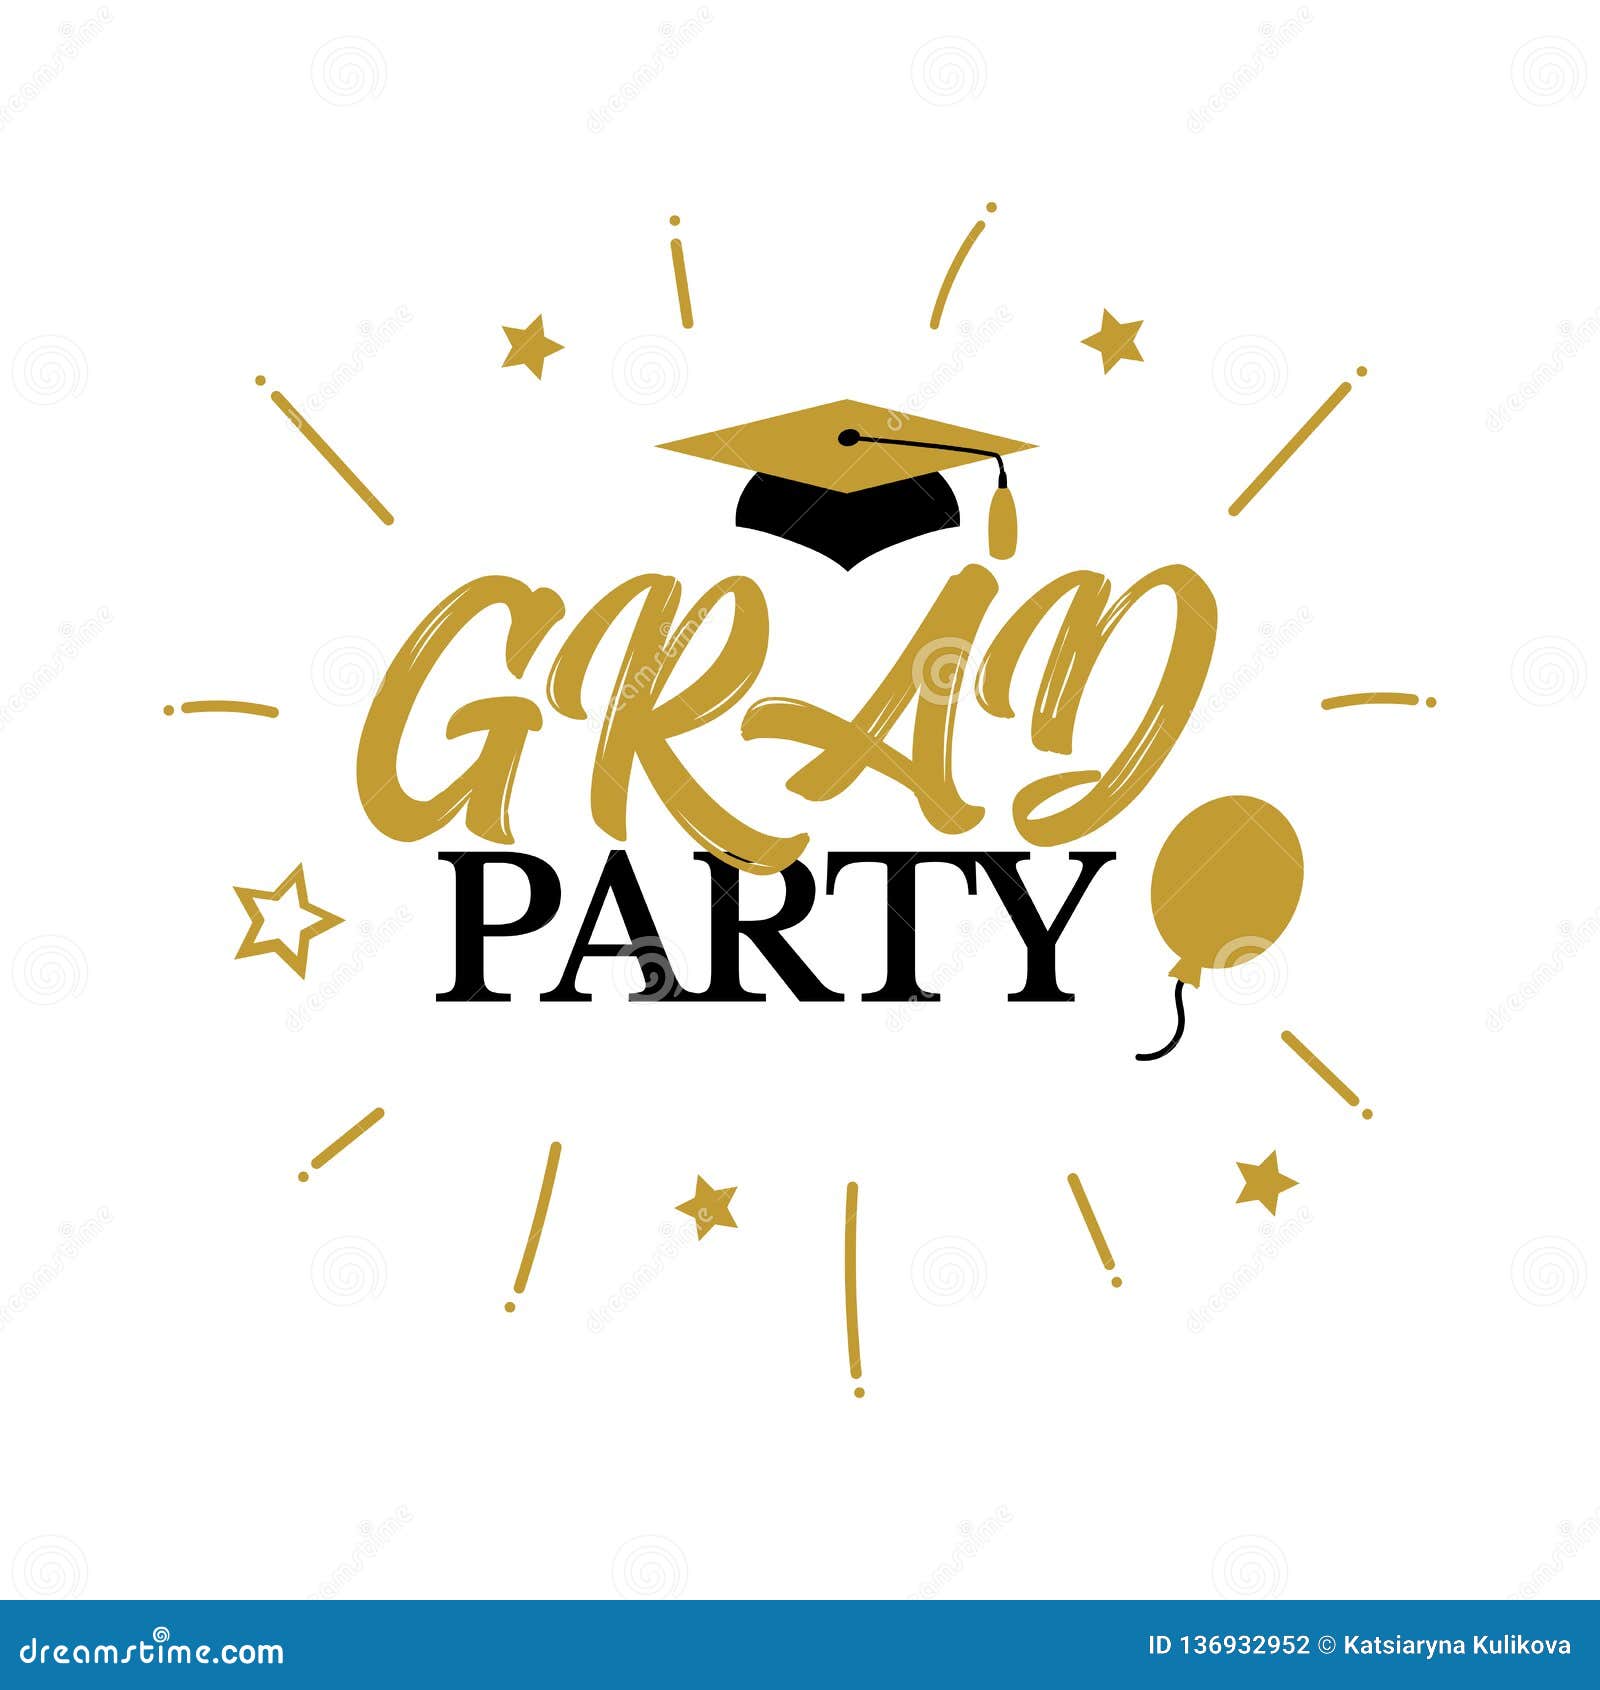 Congrats Graduates Class Of 2019 Graduation Congratulation Party